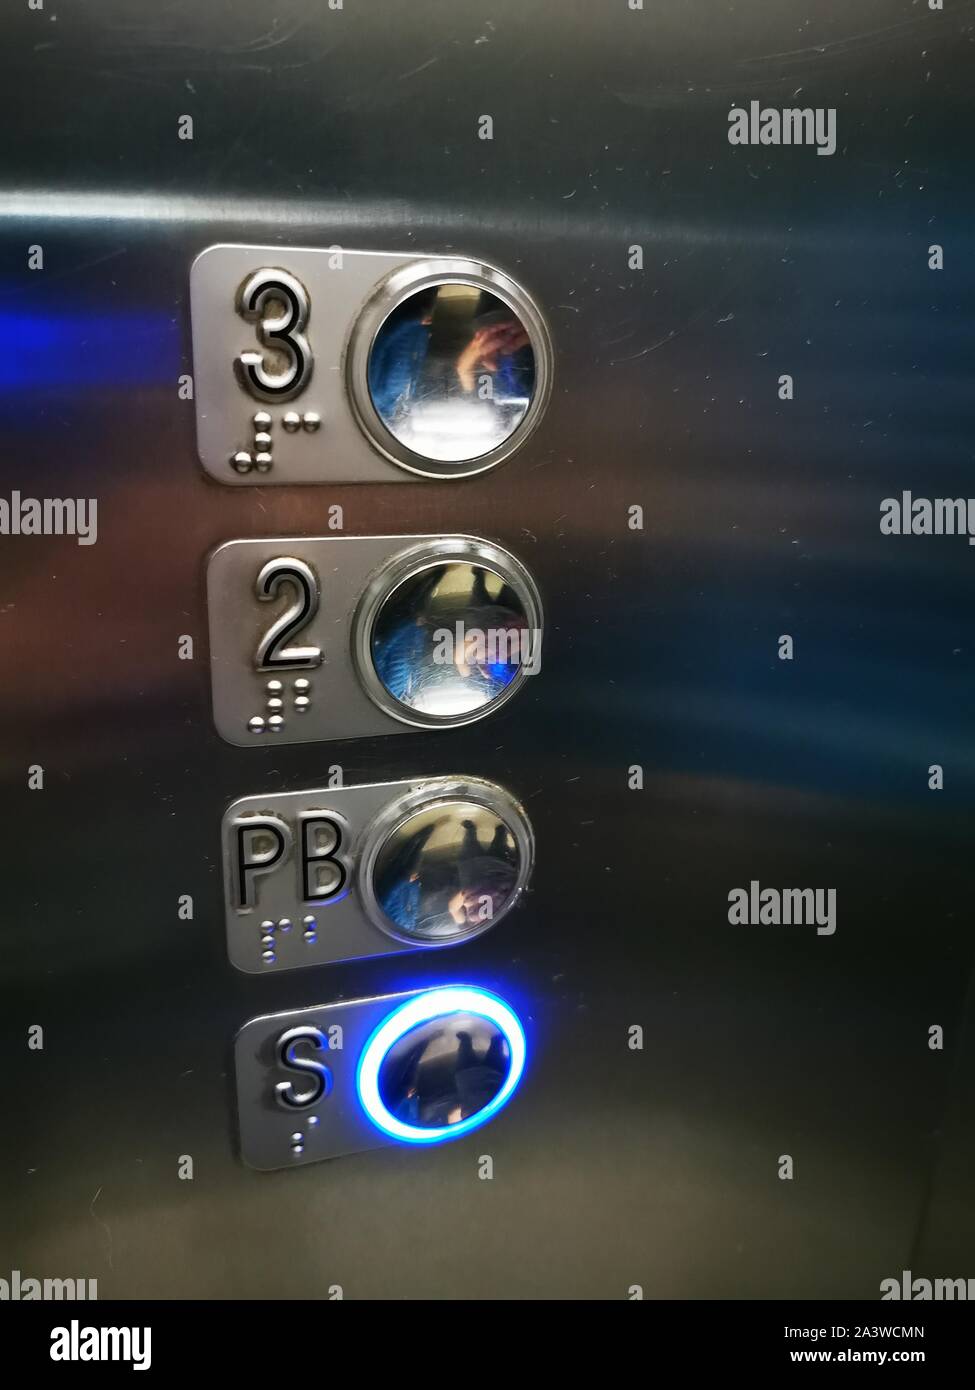 Pantalla del ascensor fotografías e imágenes de alta resolución - Alamy